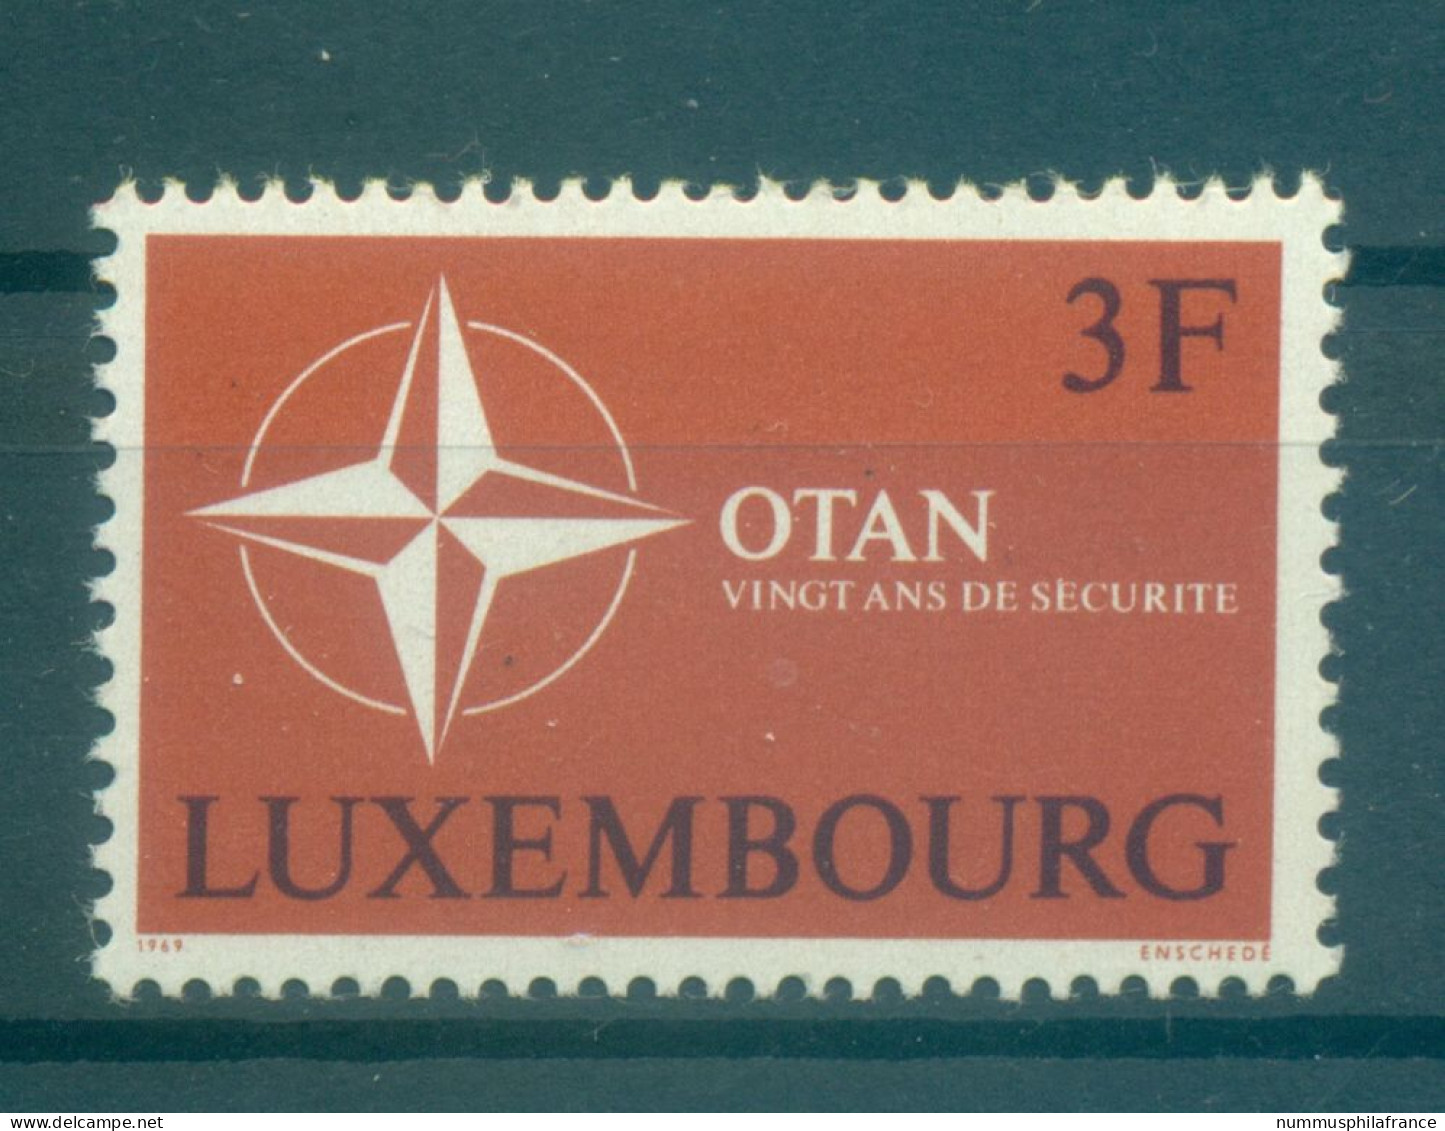 Luxembourg 1969 - Y & T N. 744 - OTAN (Michel N. 794) - Unused Stamps